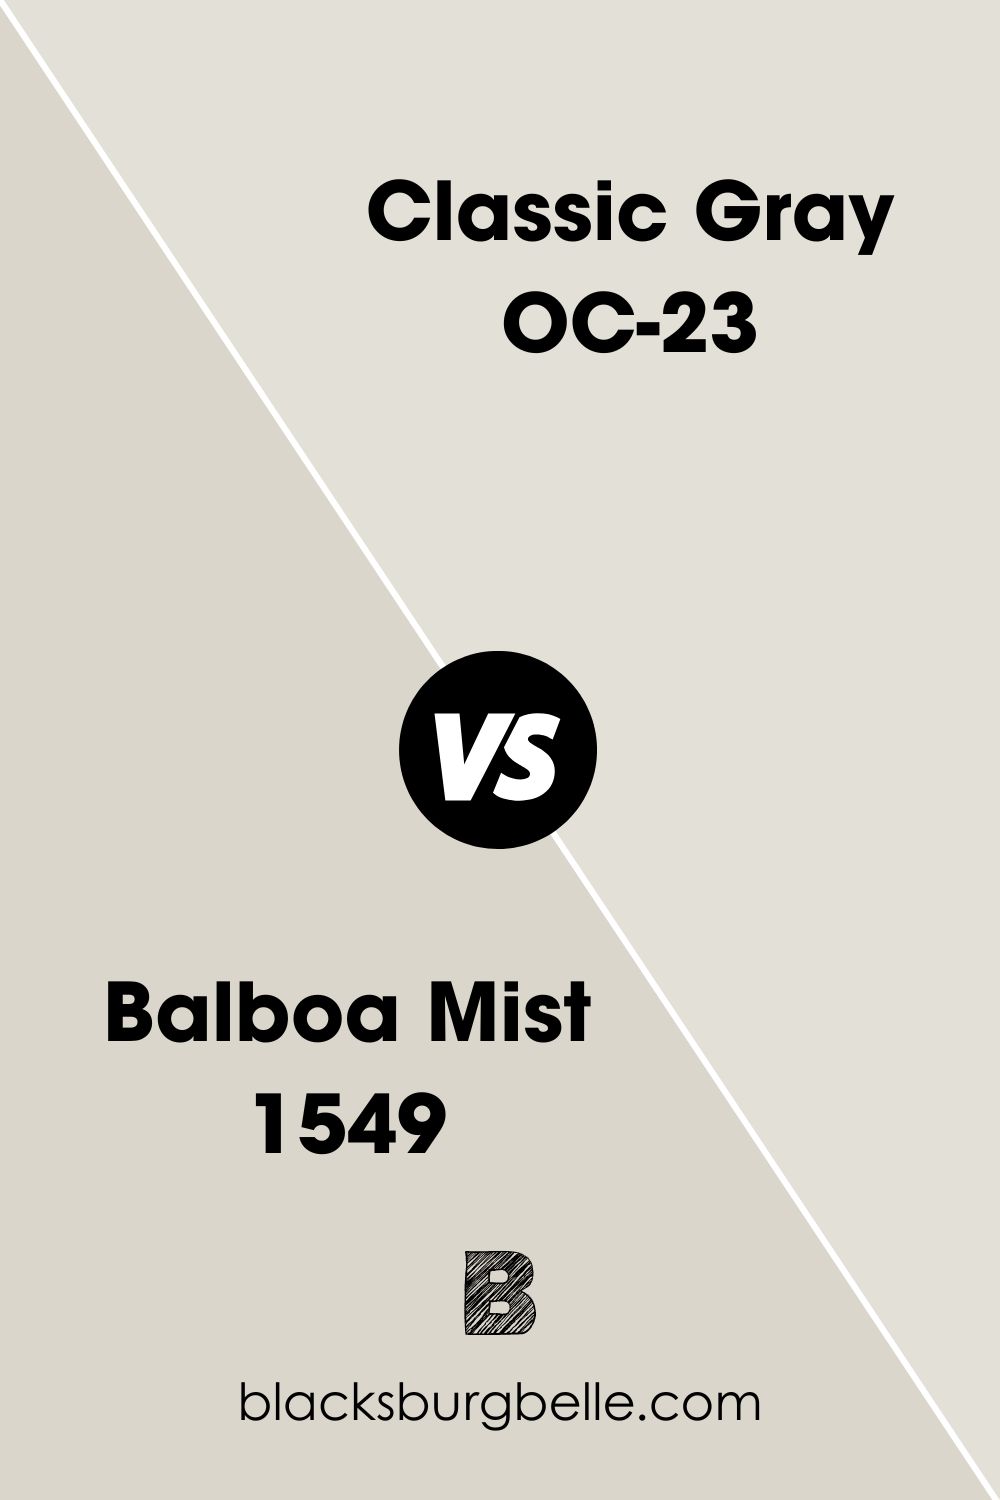 Balboa Mist 1549